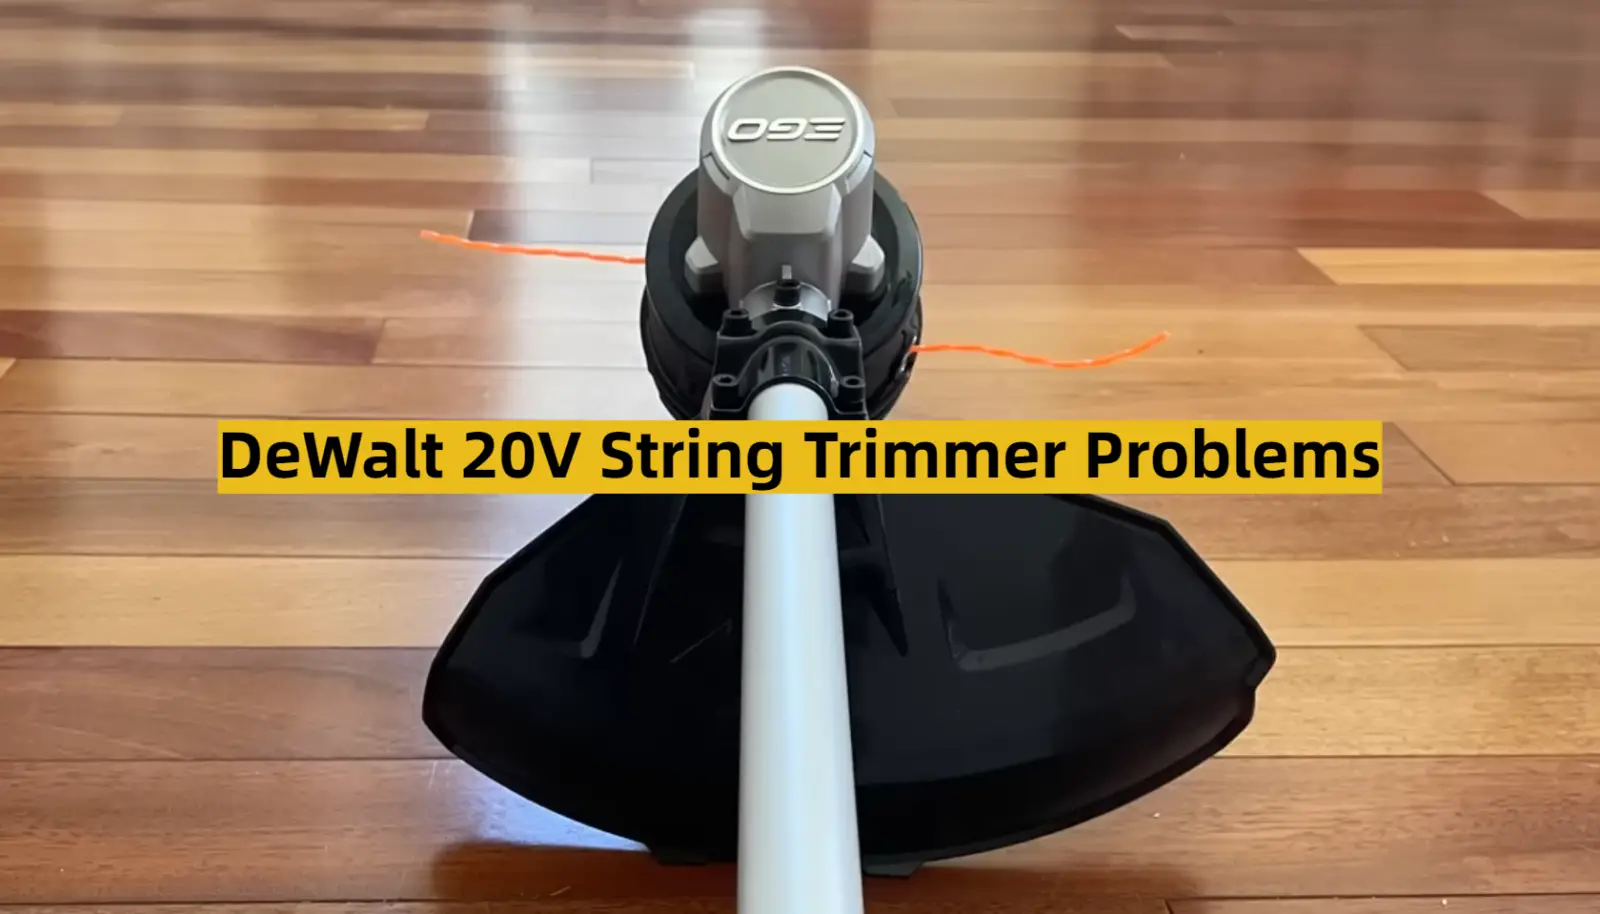 DeWalt 20V String Trimmer Problems